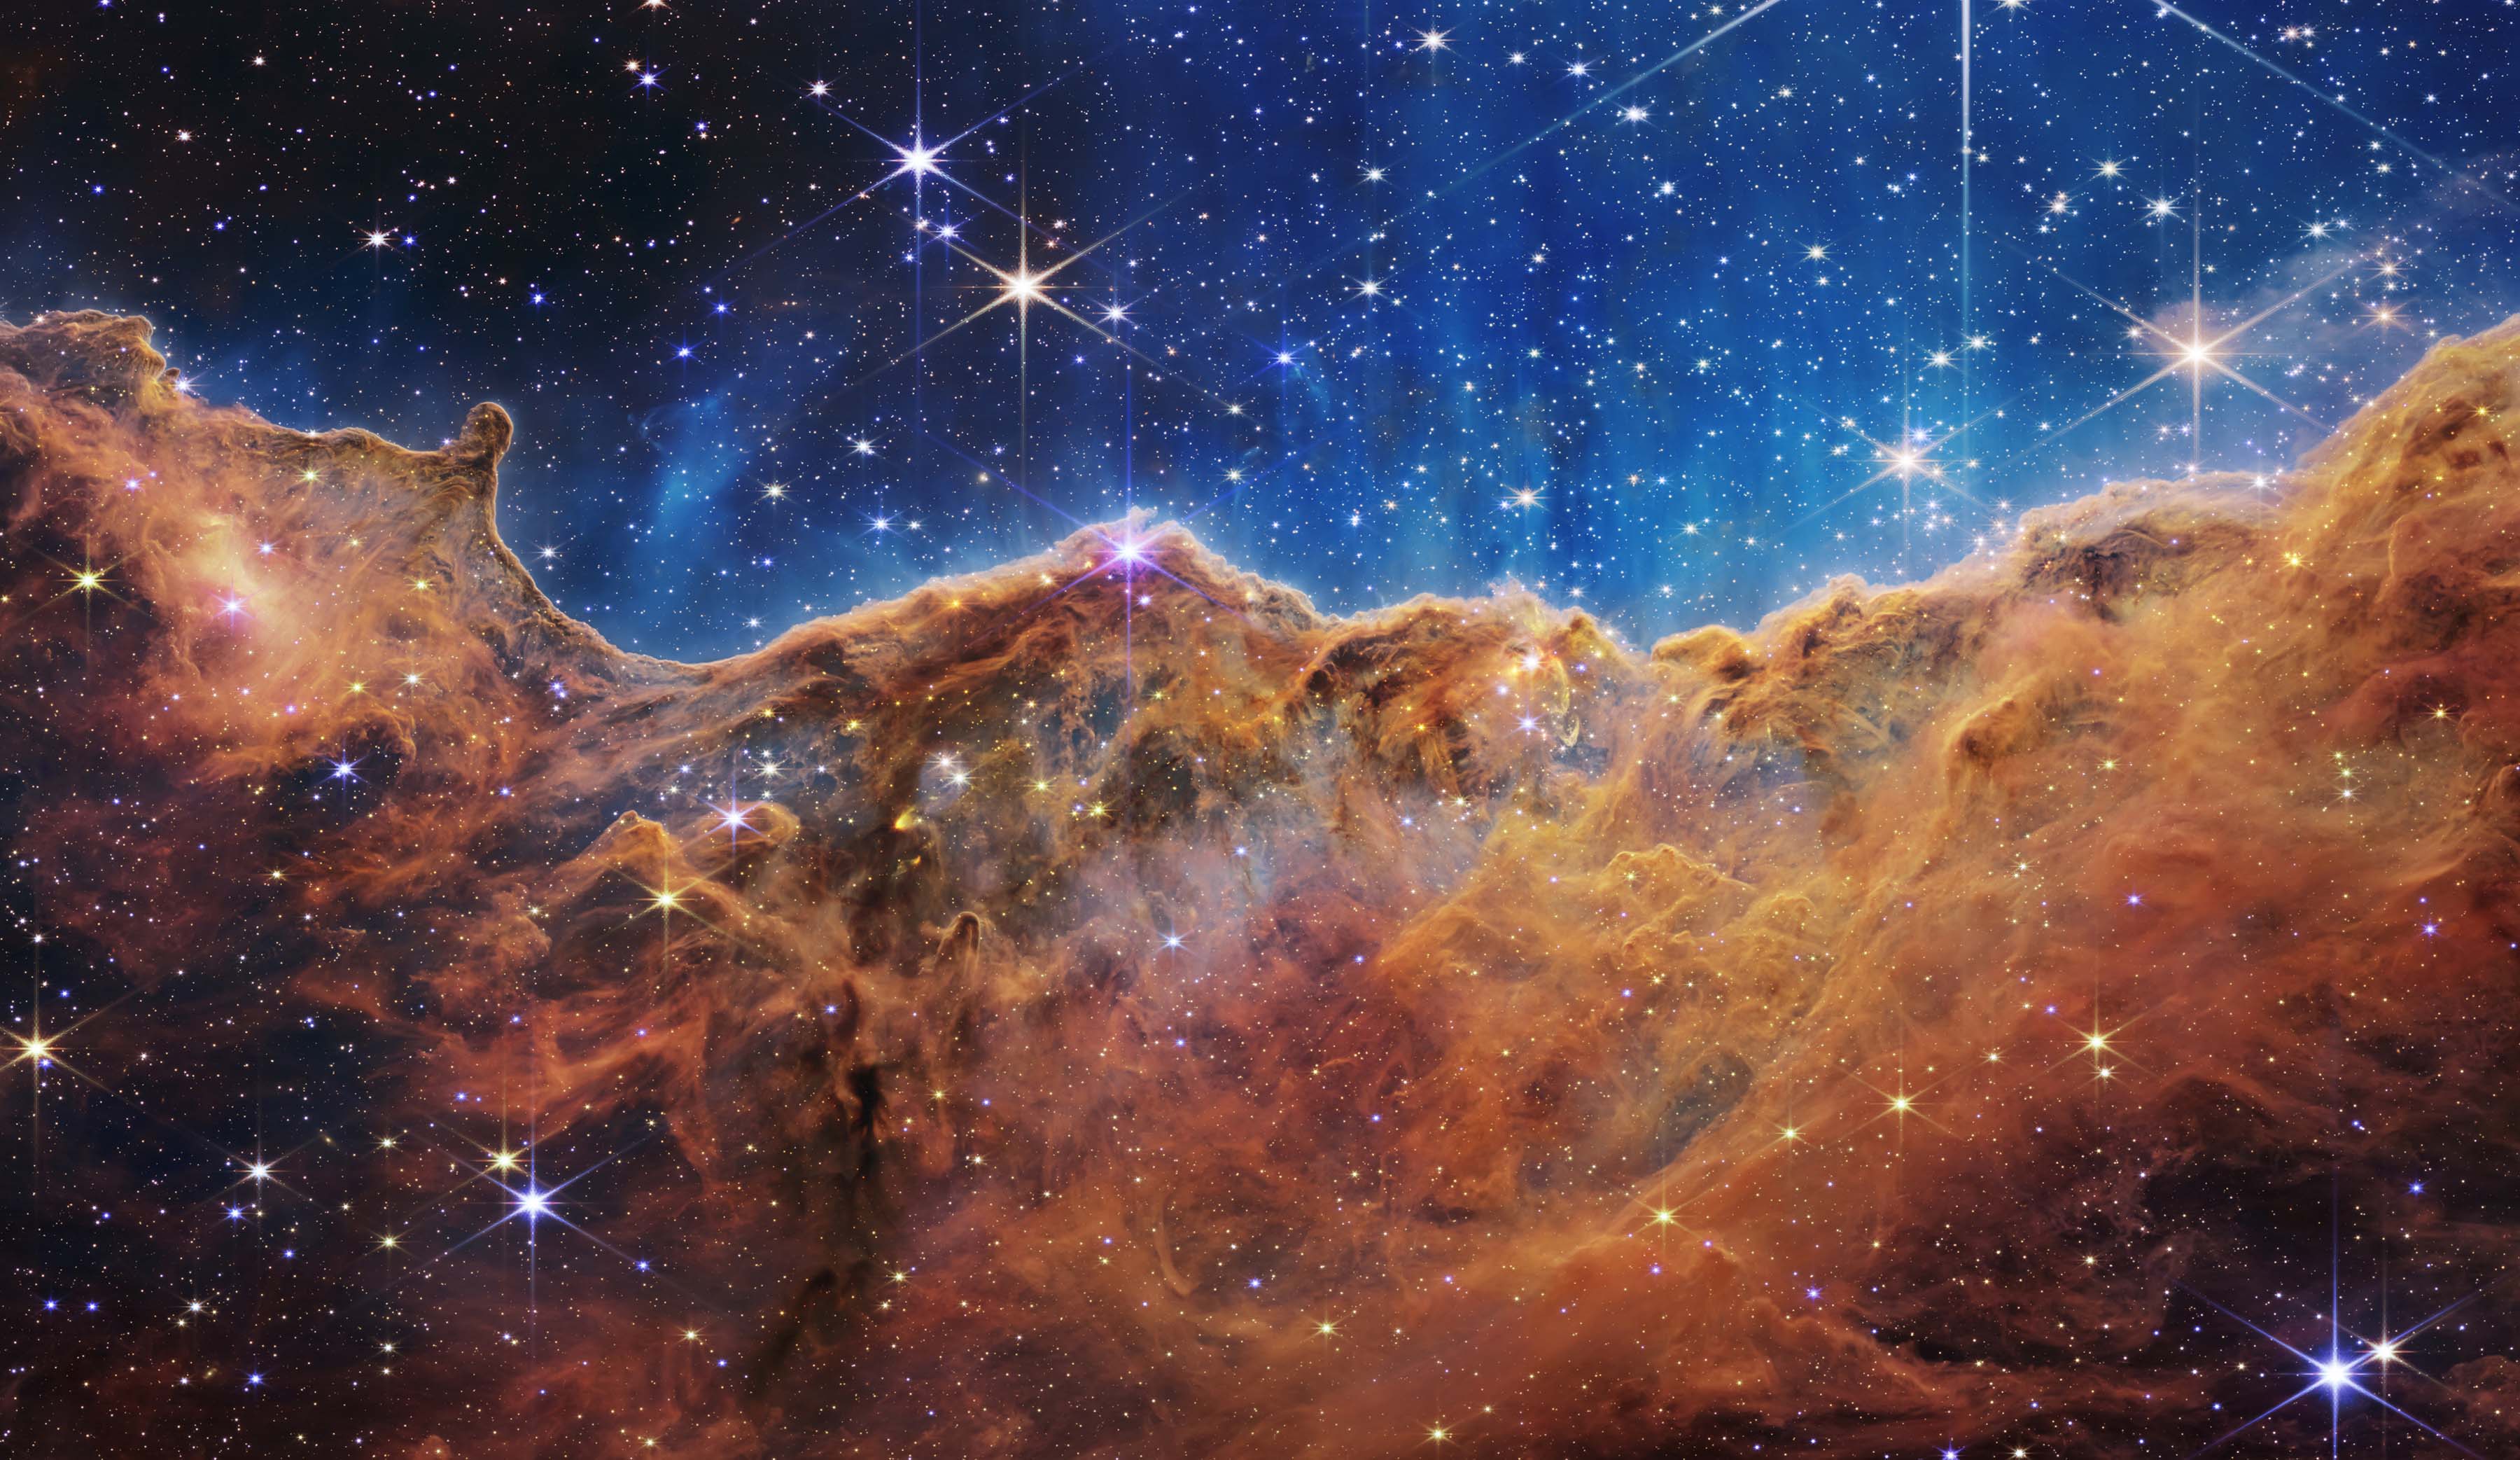 Carina Nebula from NASA's James Webb Space Telescope